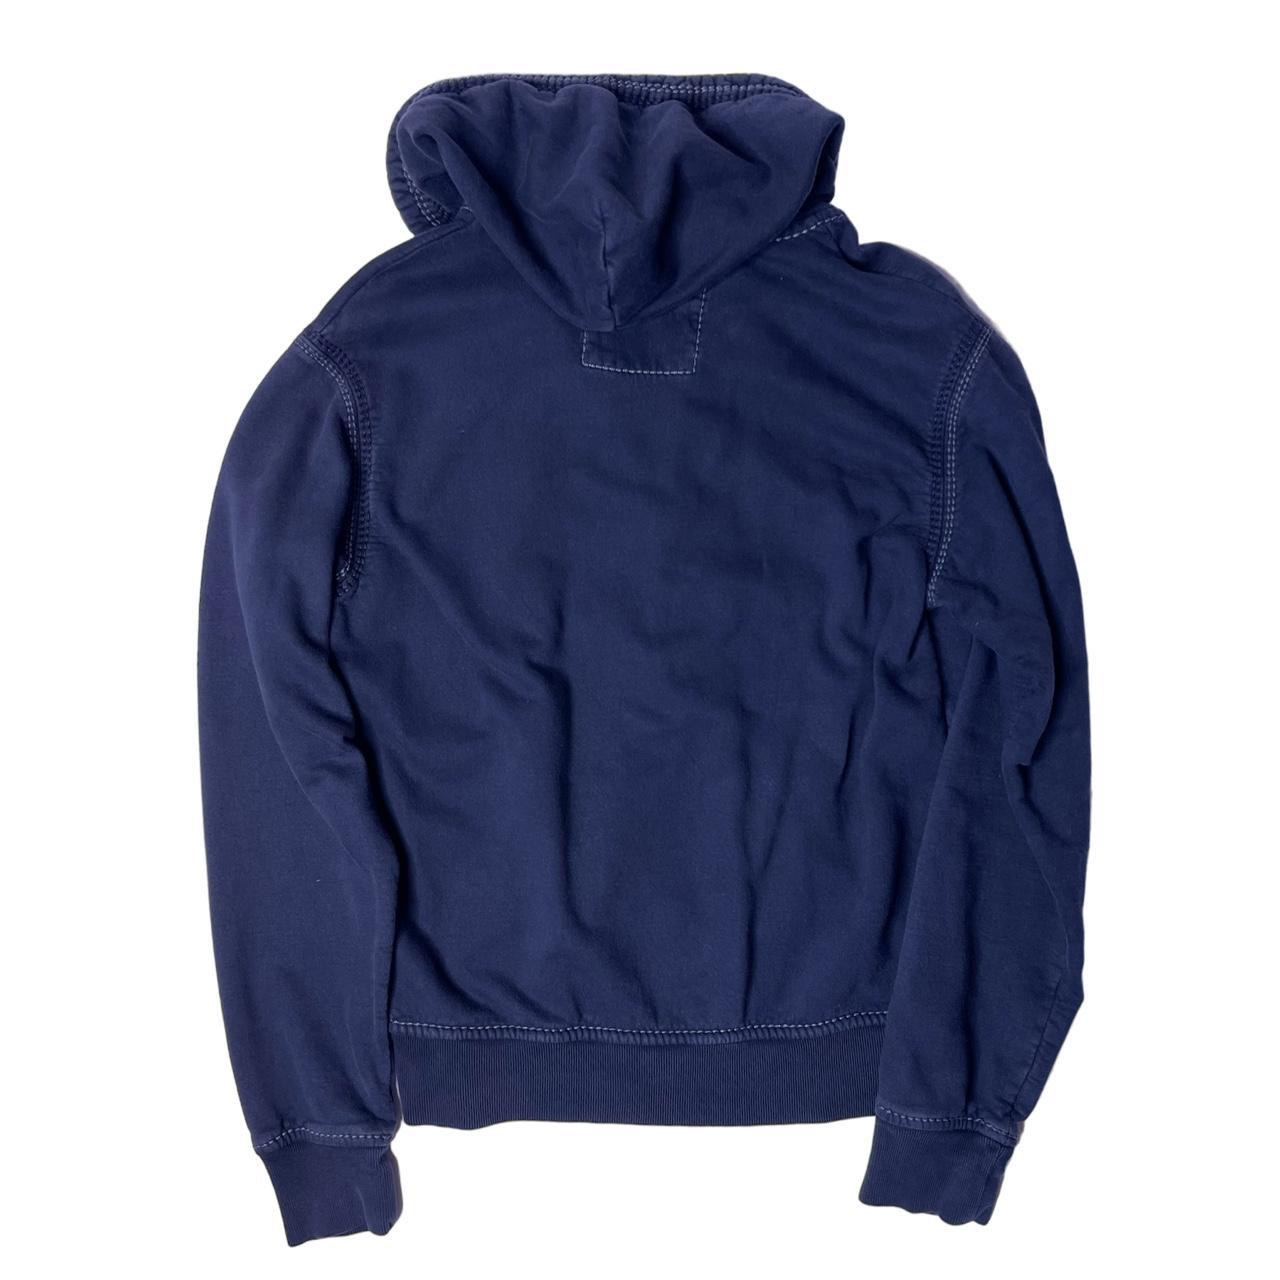 True religion black thick stitch zip up hoodie , the... - Depop